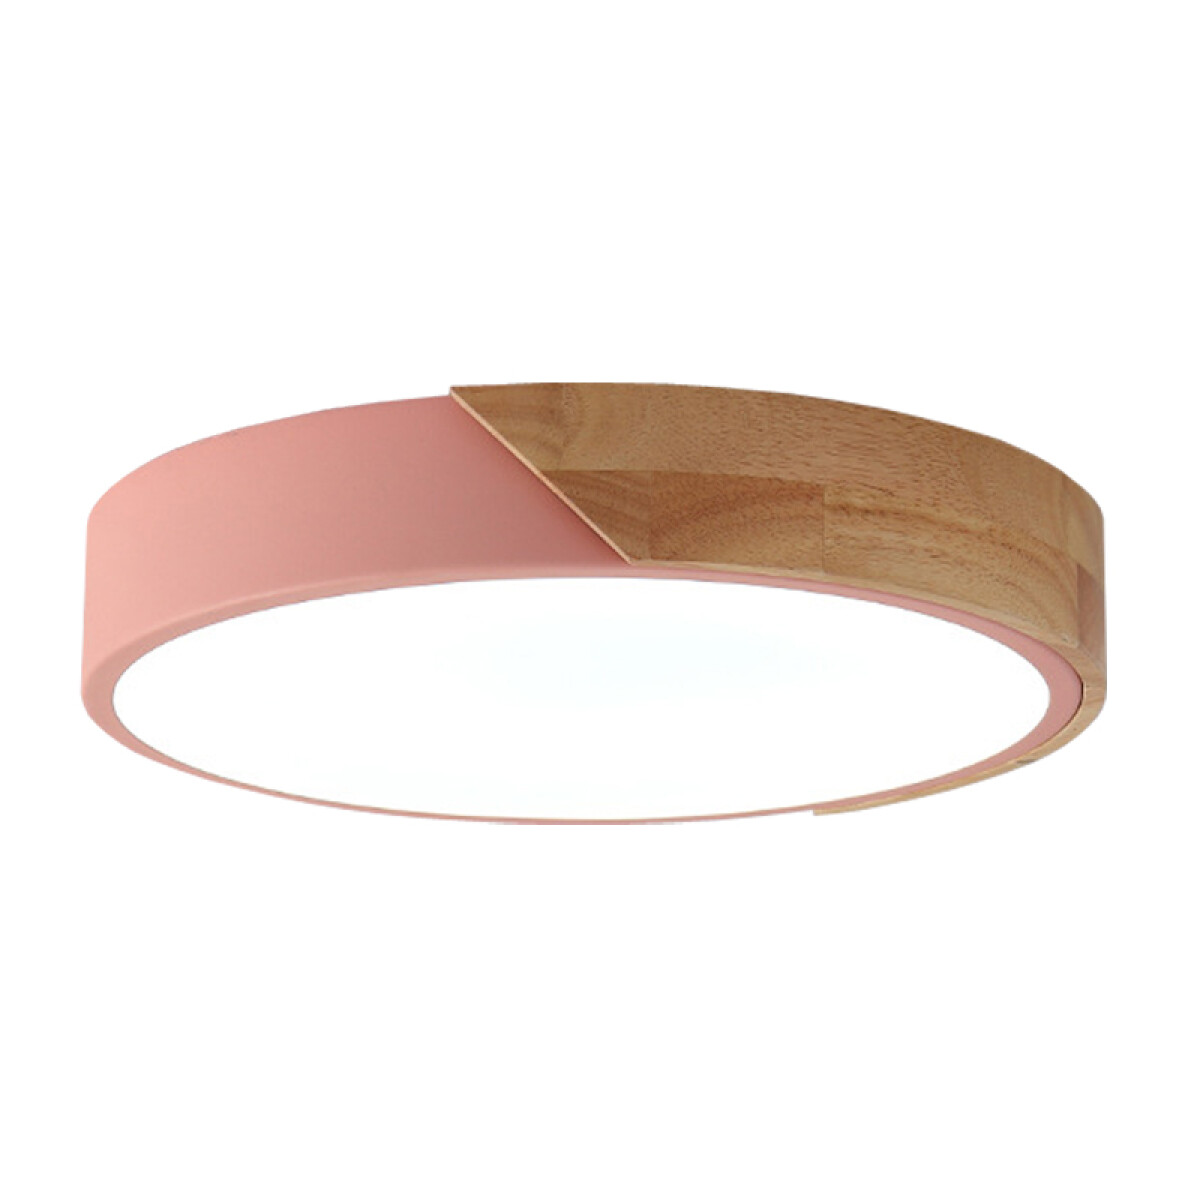 Plafón LED de diseño circular en madera y aluminio 20W - Rosa 